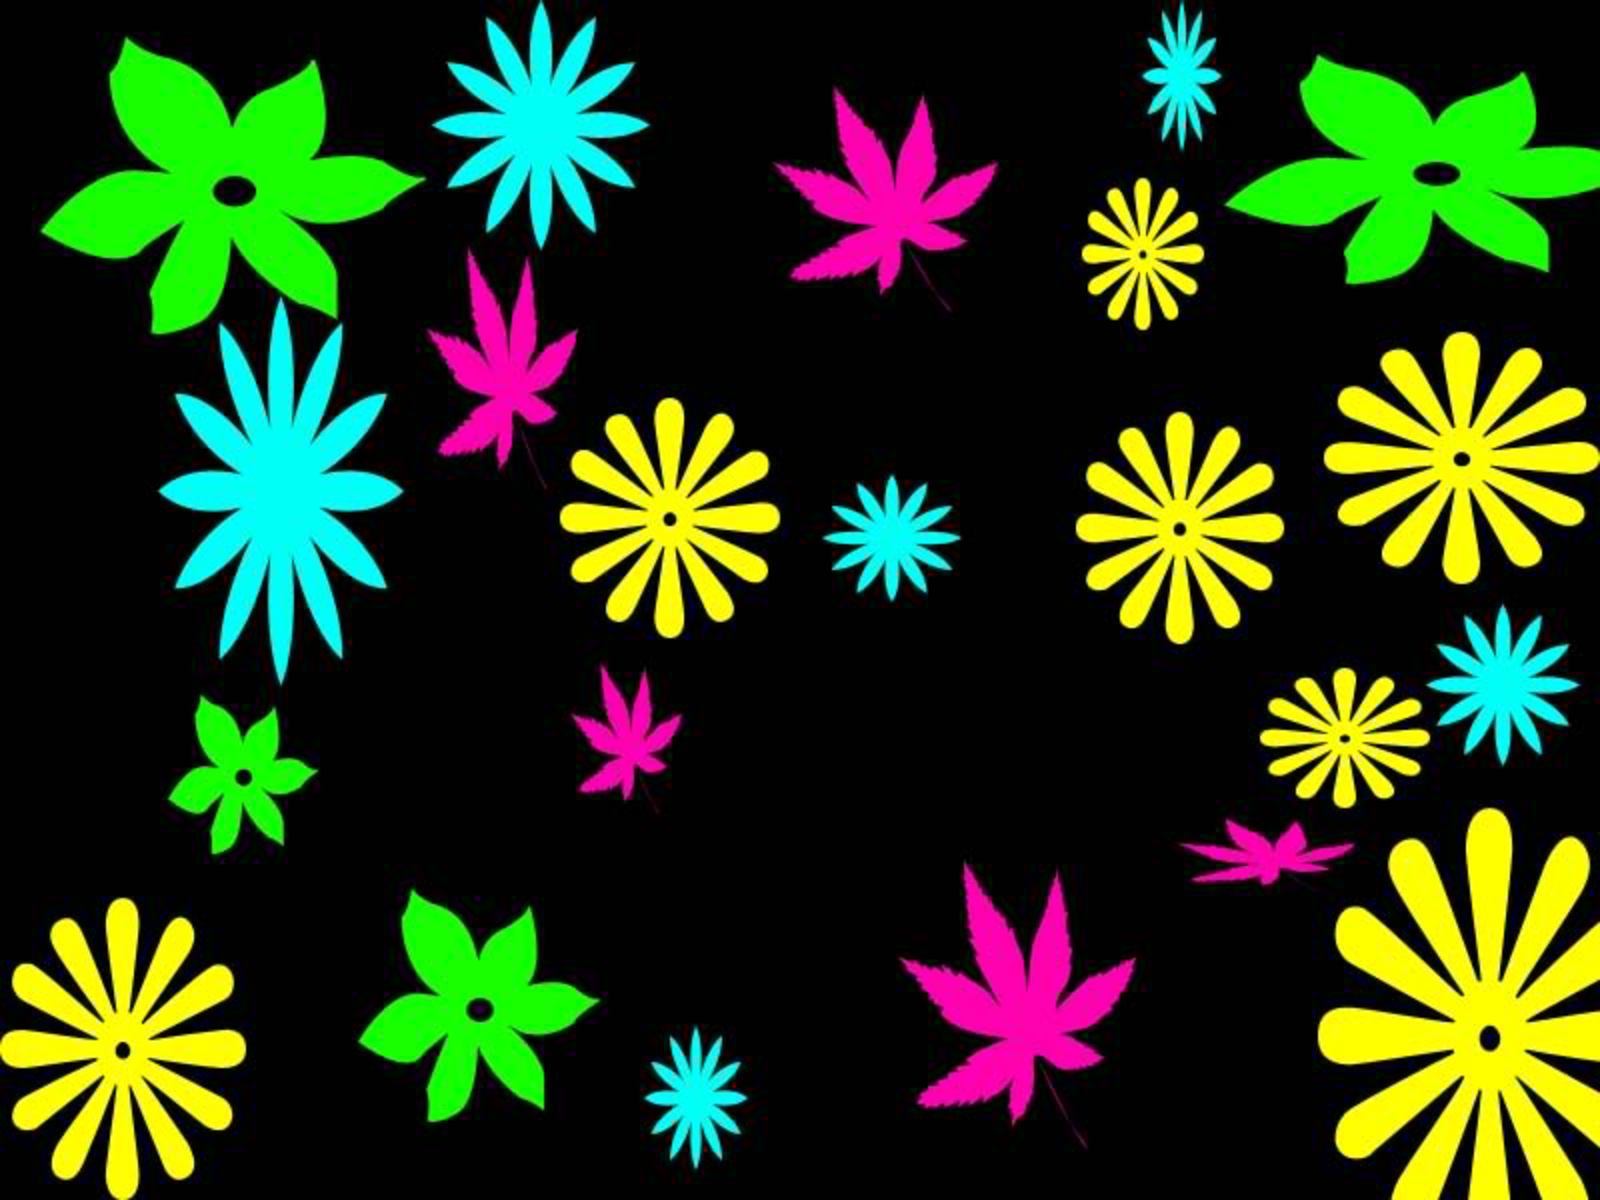 Neon Colors Rock images Flowers wallpaper photos 18994421